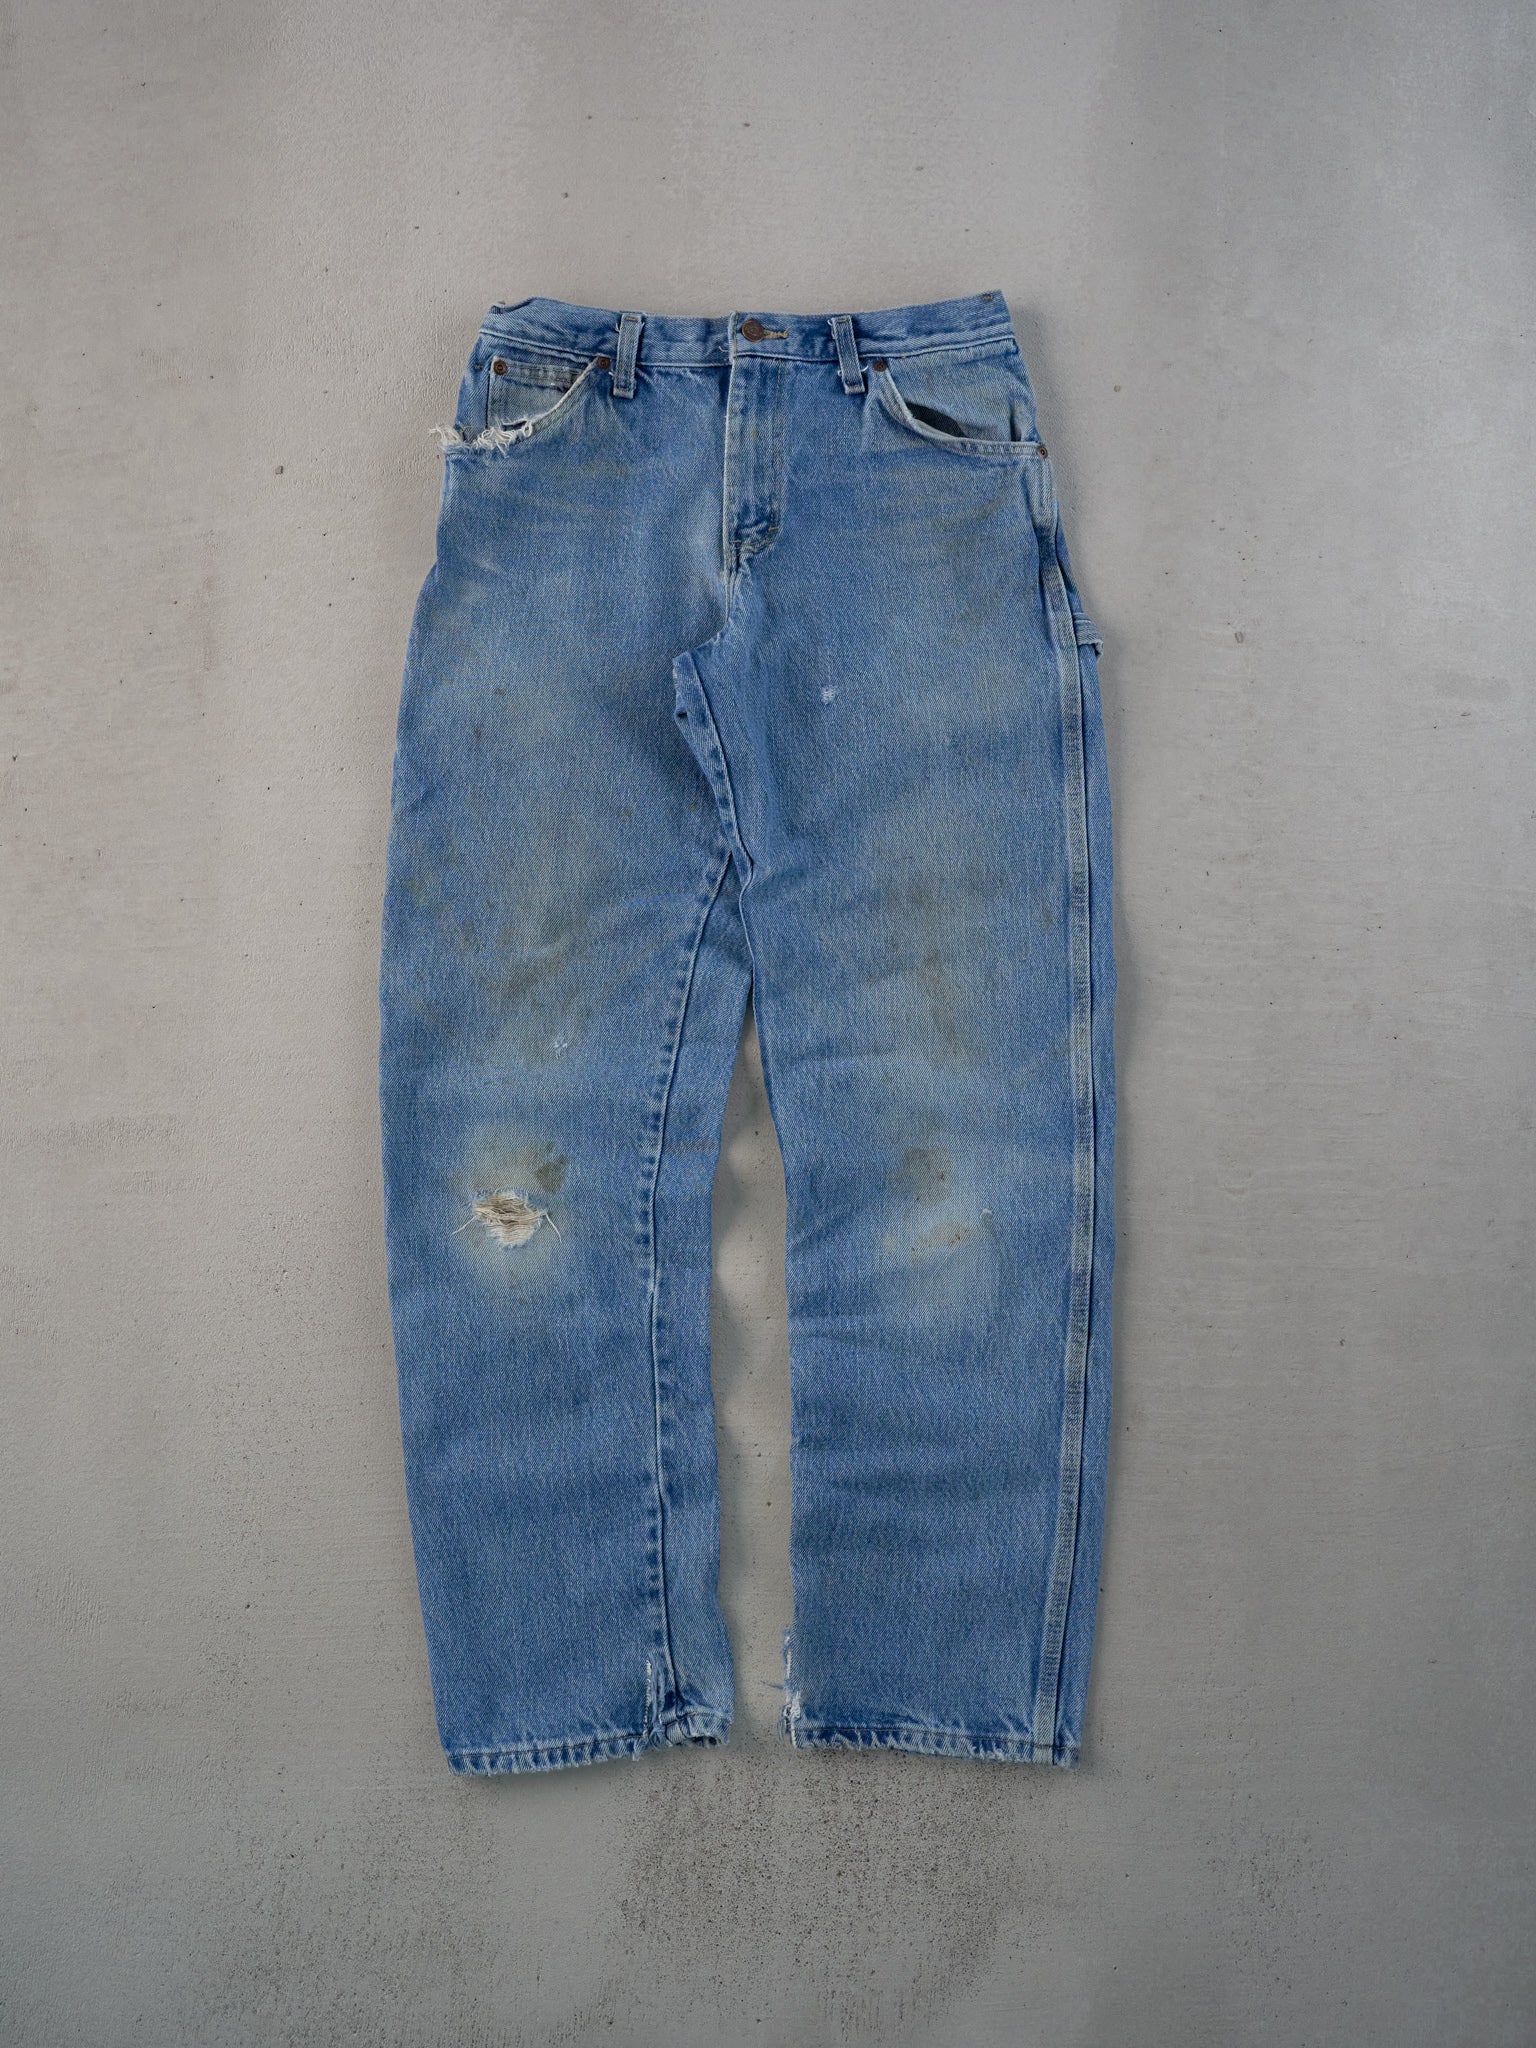 Vintage 90s Blue Dickies Workwear Carpenter Denim Pants (30x31)